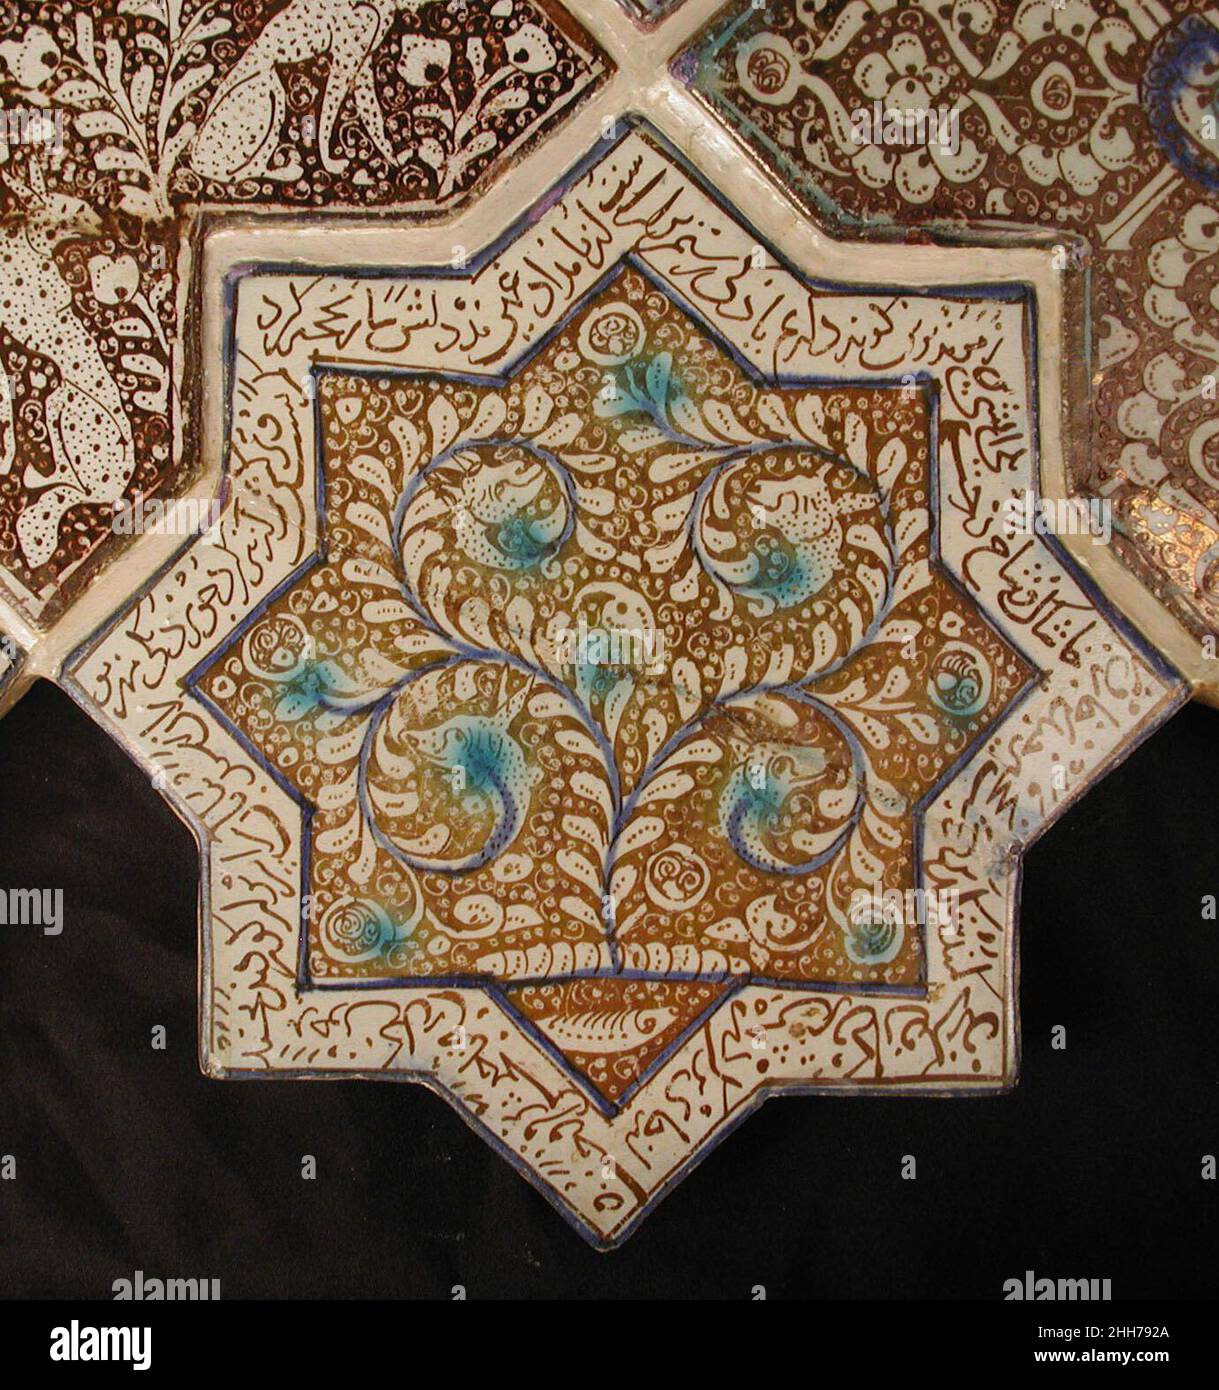 Sternförmige Fliese 13th–14th Jahrhundert Diese achtzackige Sternziegel war einst Teil einer Platte aus Stern- und kreuzförmigen Fliesen, die die Wände eines Ilkhanid-Gebäudes schmückt. Wahrscheinlich im Keramikzentrum von Kashan hergestellt, zeigt es das waq-waq-Design einer Pflanze, deren Ranken sich zu Tierköpfen entwickeln, ein Merkmal, das während der Seldschuken-Zeit in den Iran kam. Der persische Text, der am Rand der Kachel verläuft, ist ein Auszug aus dem Shahnama, in dem Rustam, einer der großen Helden der Geschichte, in den Kampf verwickelt ist. Sternförmige Fliese 450427 Stockfoto